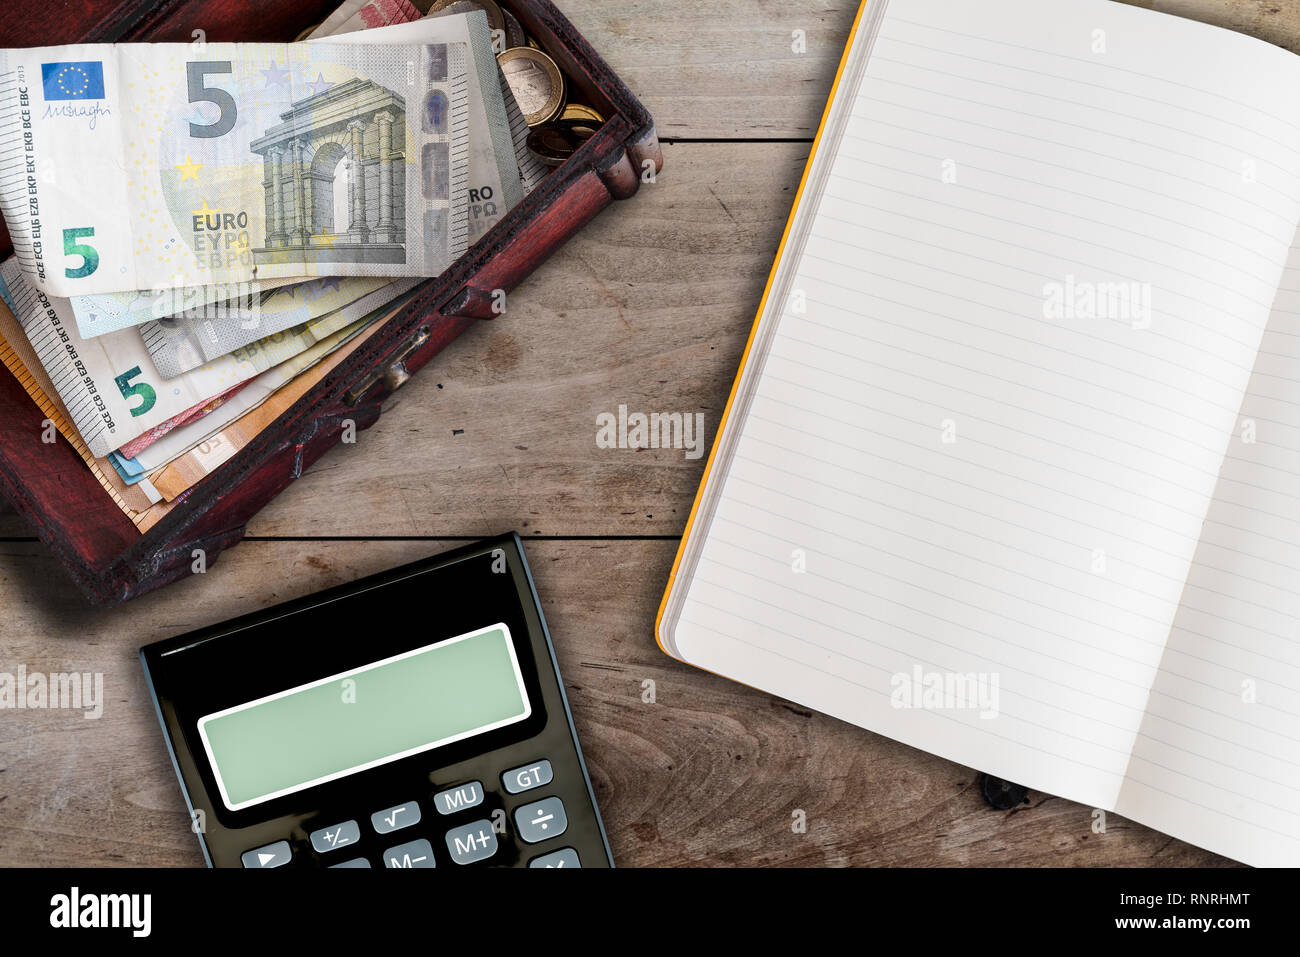 Finanzen und die allgemeine Ordnung und Sauberkeit Konzept mit offenen Leerbuch, Rechner und Holzbox mit Bargeld auf Tabelle ausgefüllt Stockfoto